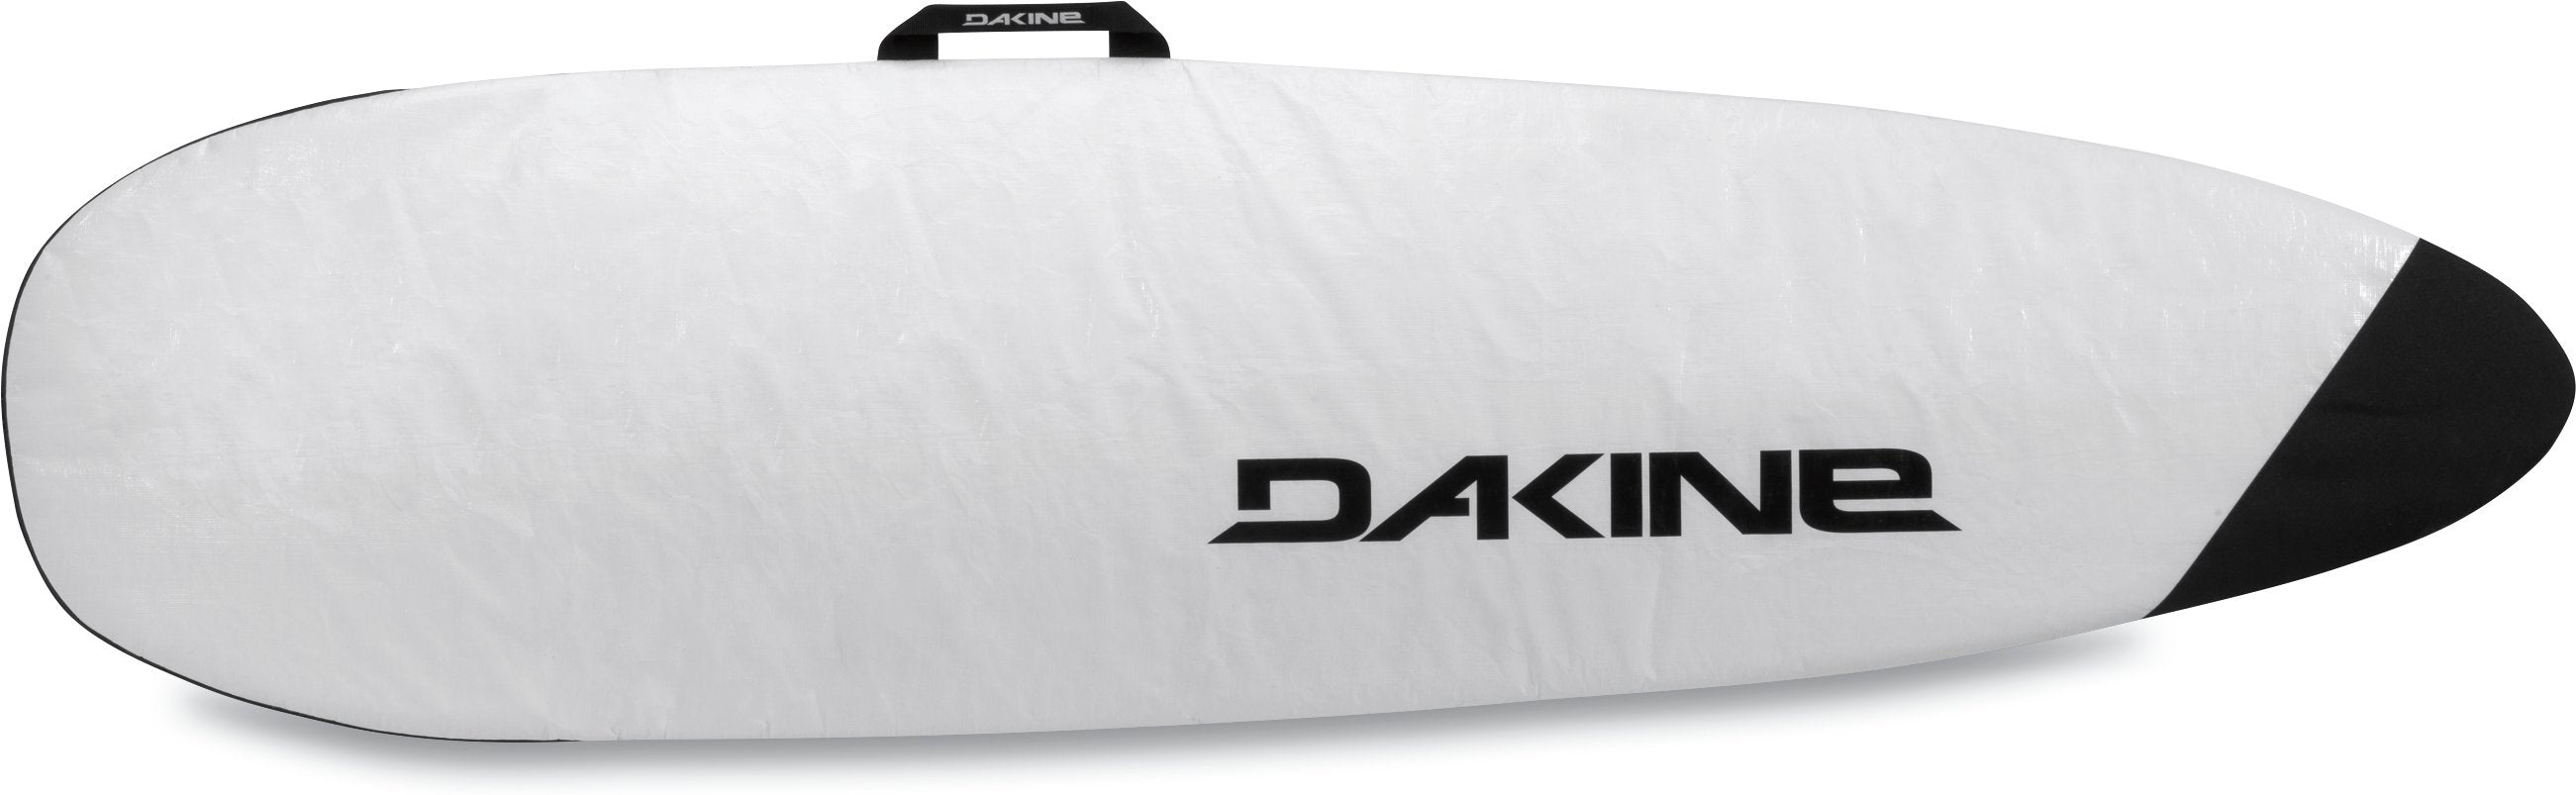 Dakine Shuttle Surfboard Bag Thruster White 6ft0in